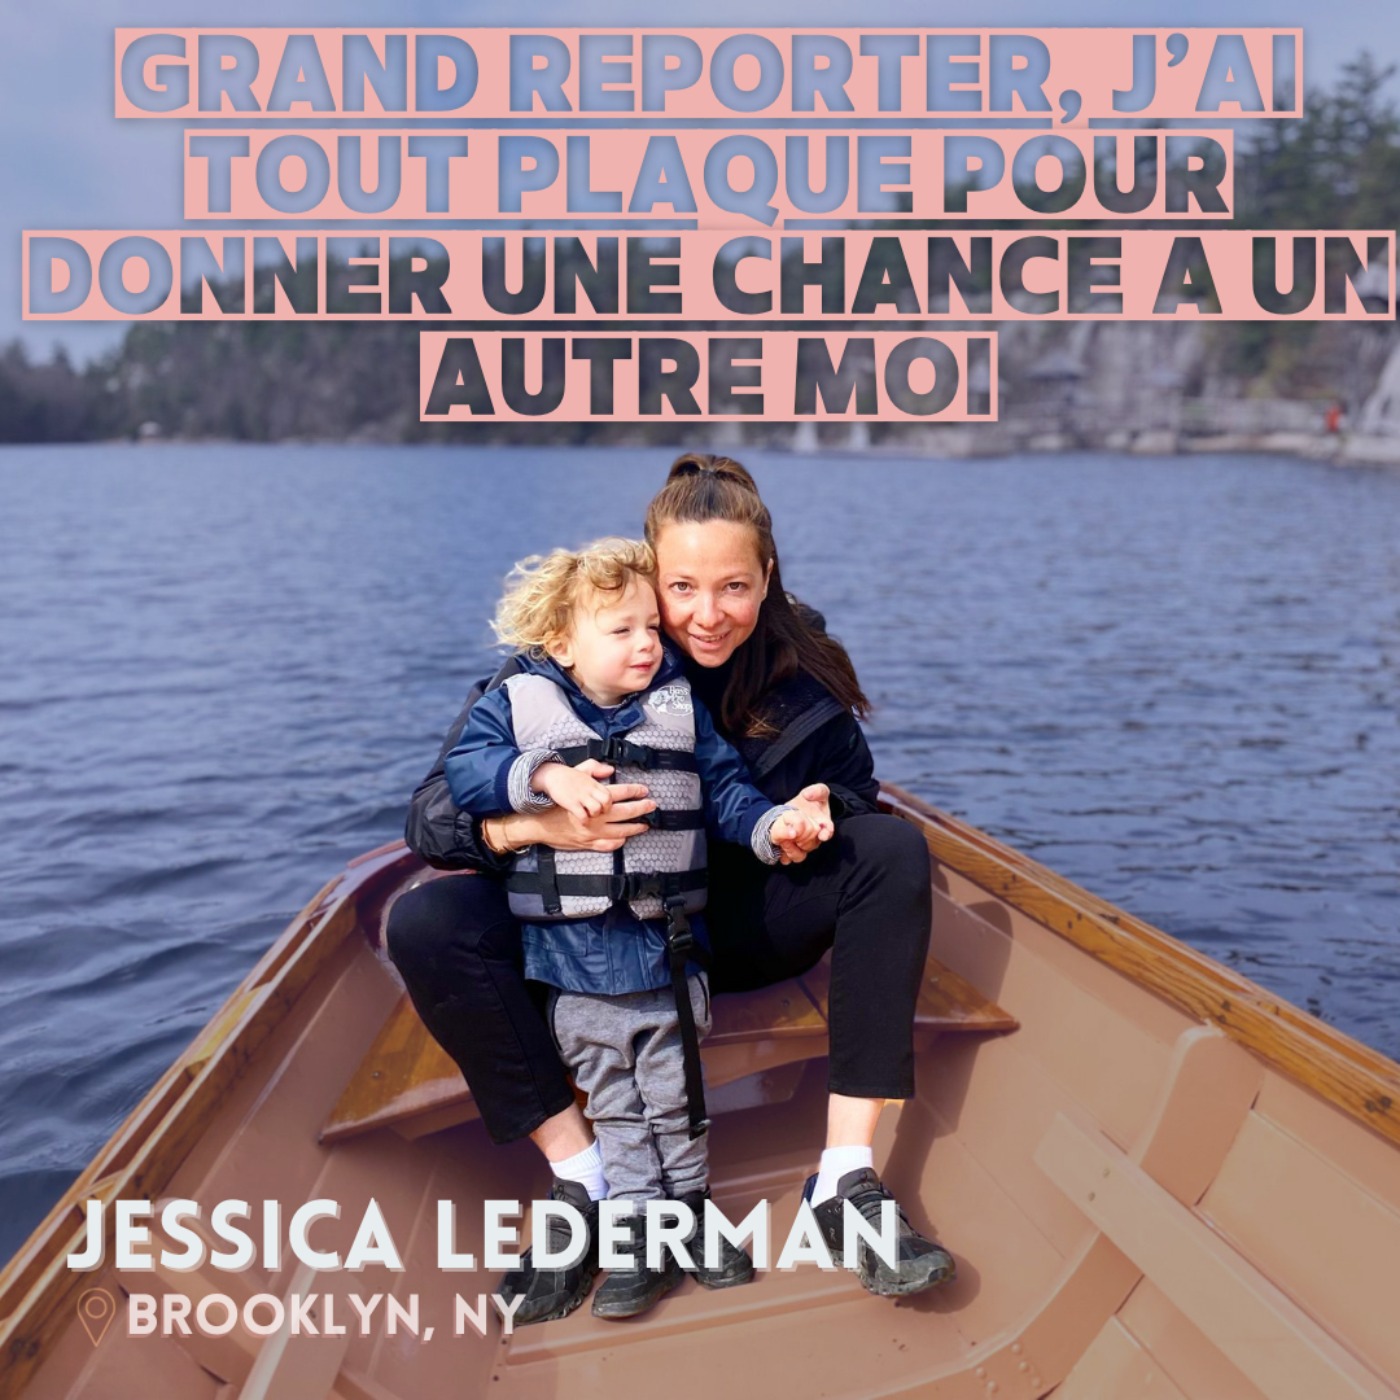 Jessica Lederman : ≪Grand reporter, j'ai tout plaqué pour donner une chance à une autre Moi≫